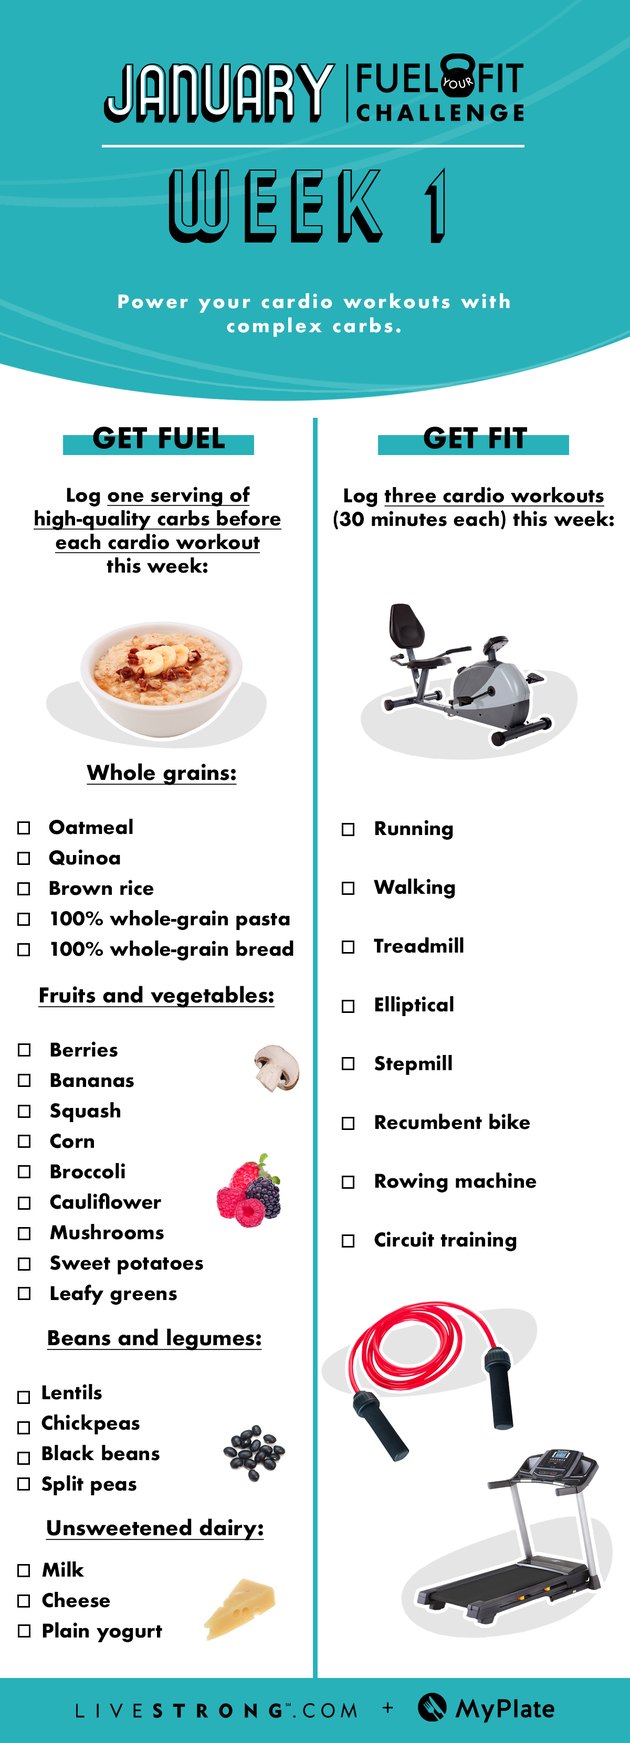 的饮食和健身的选项清单，为1月燃油你的圆弧设计挑战赛第1周